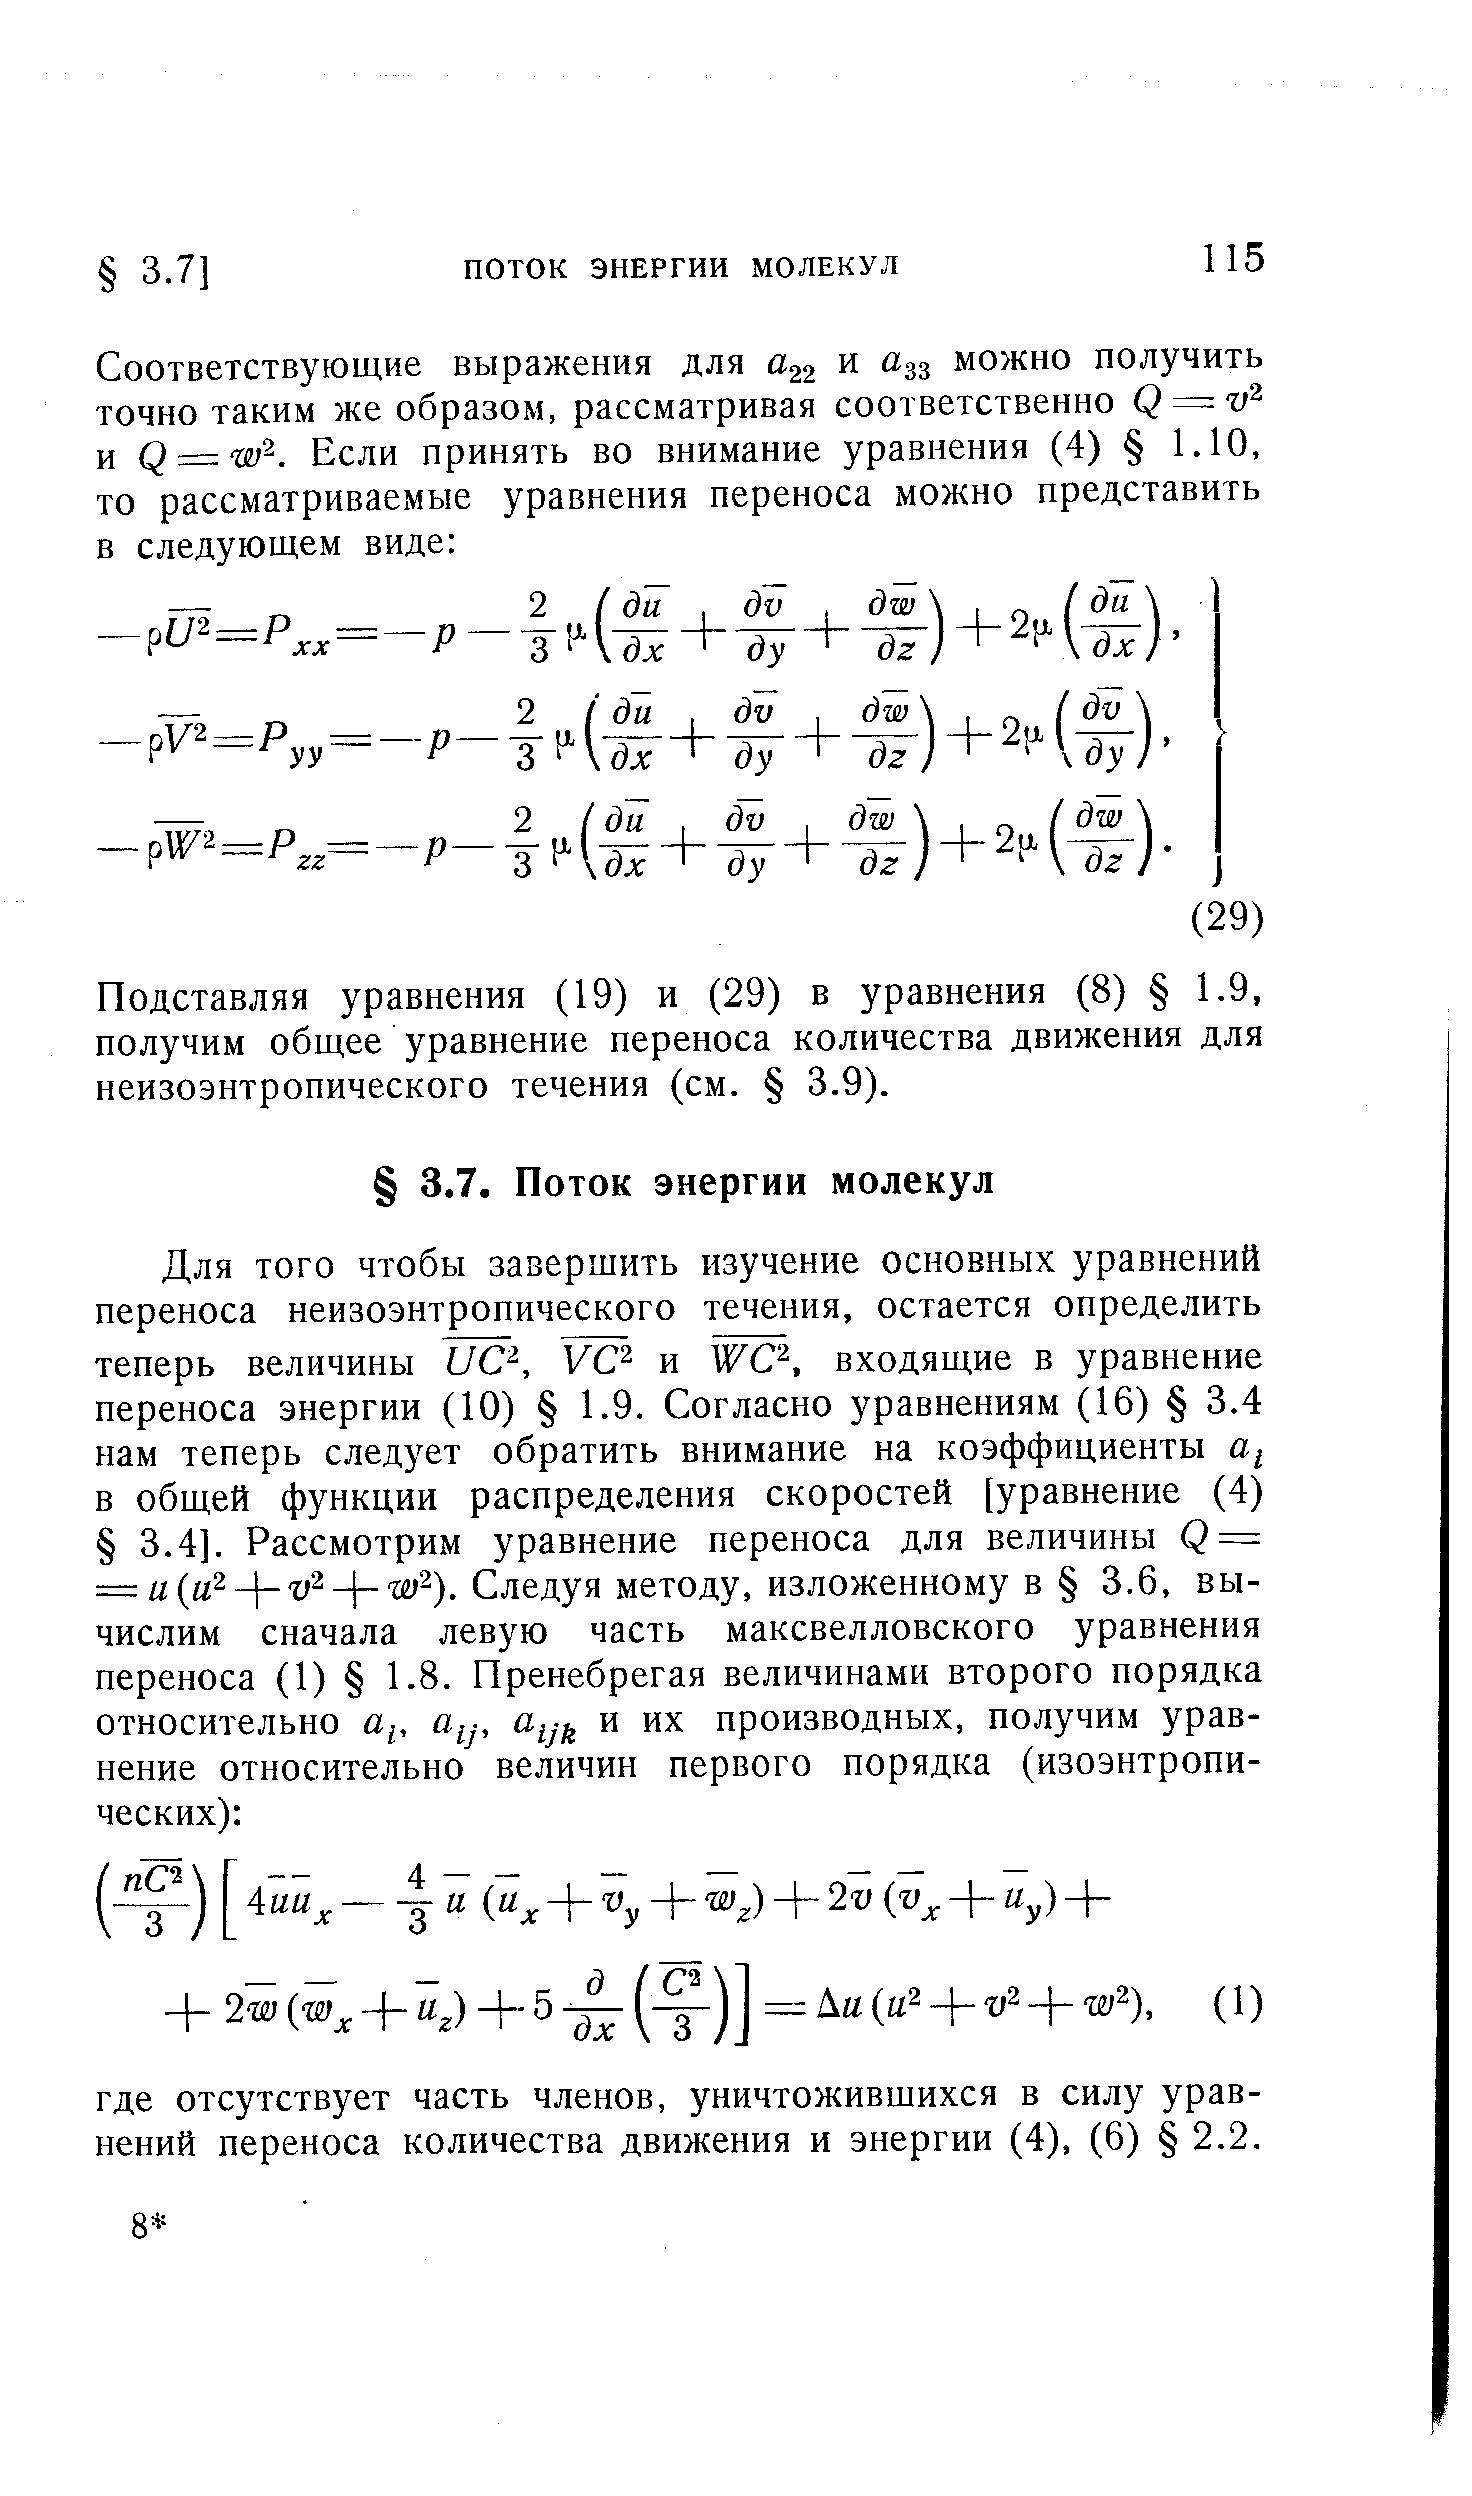 Подставляя уравнения (19) и (29) в уравнения (8) 1.9, получим общее уравнение переноса количества движения для неизоэнтропического течения (см. 3.9).
